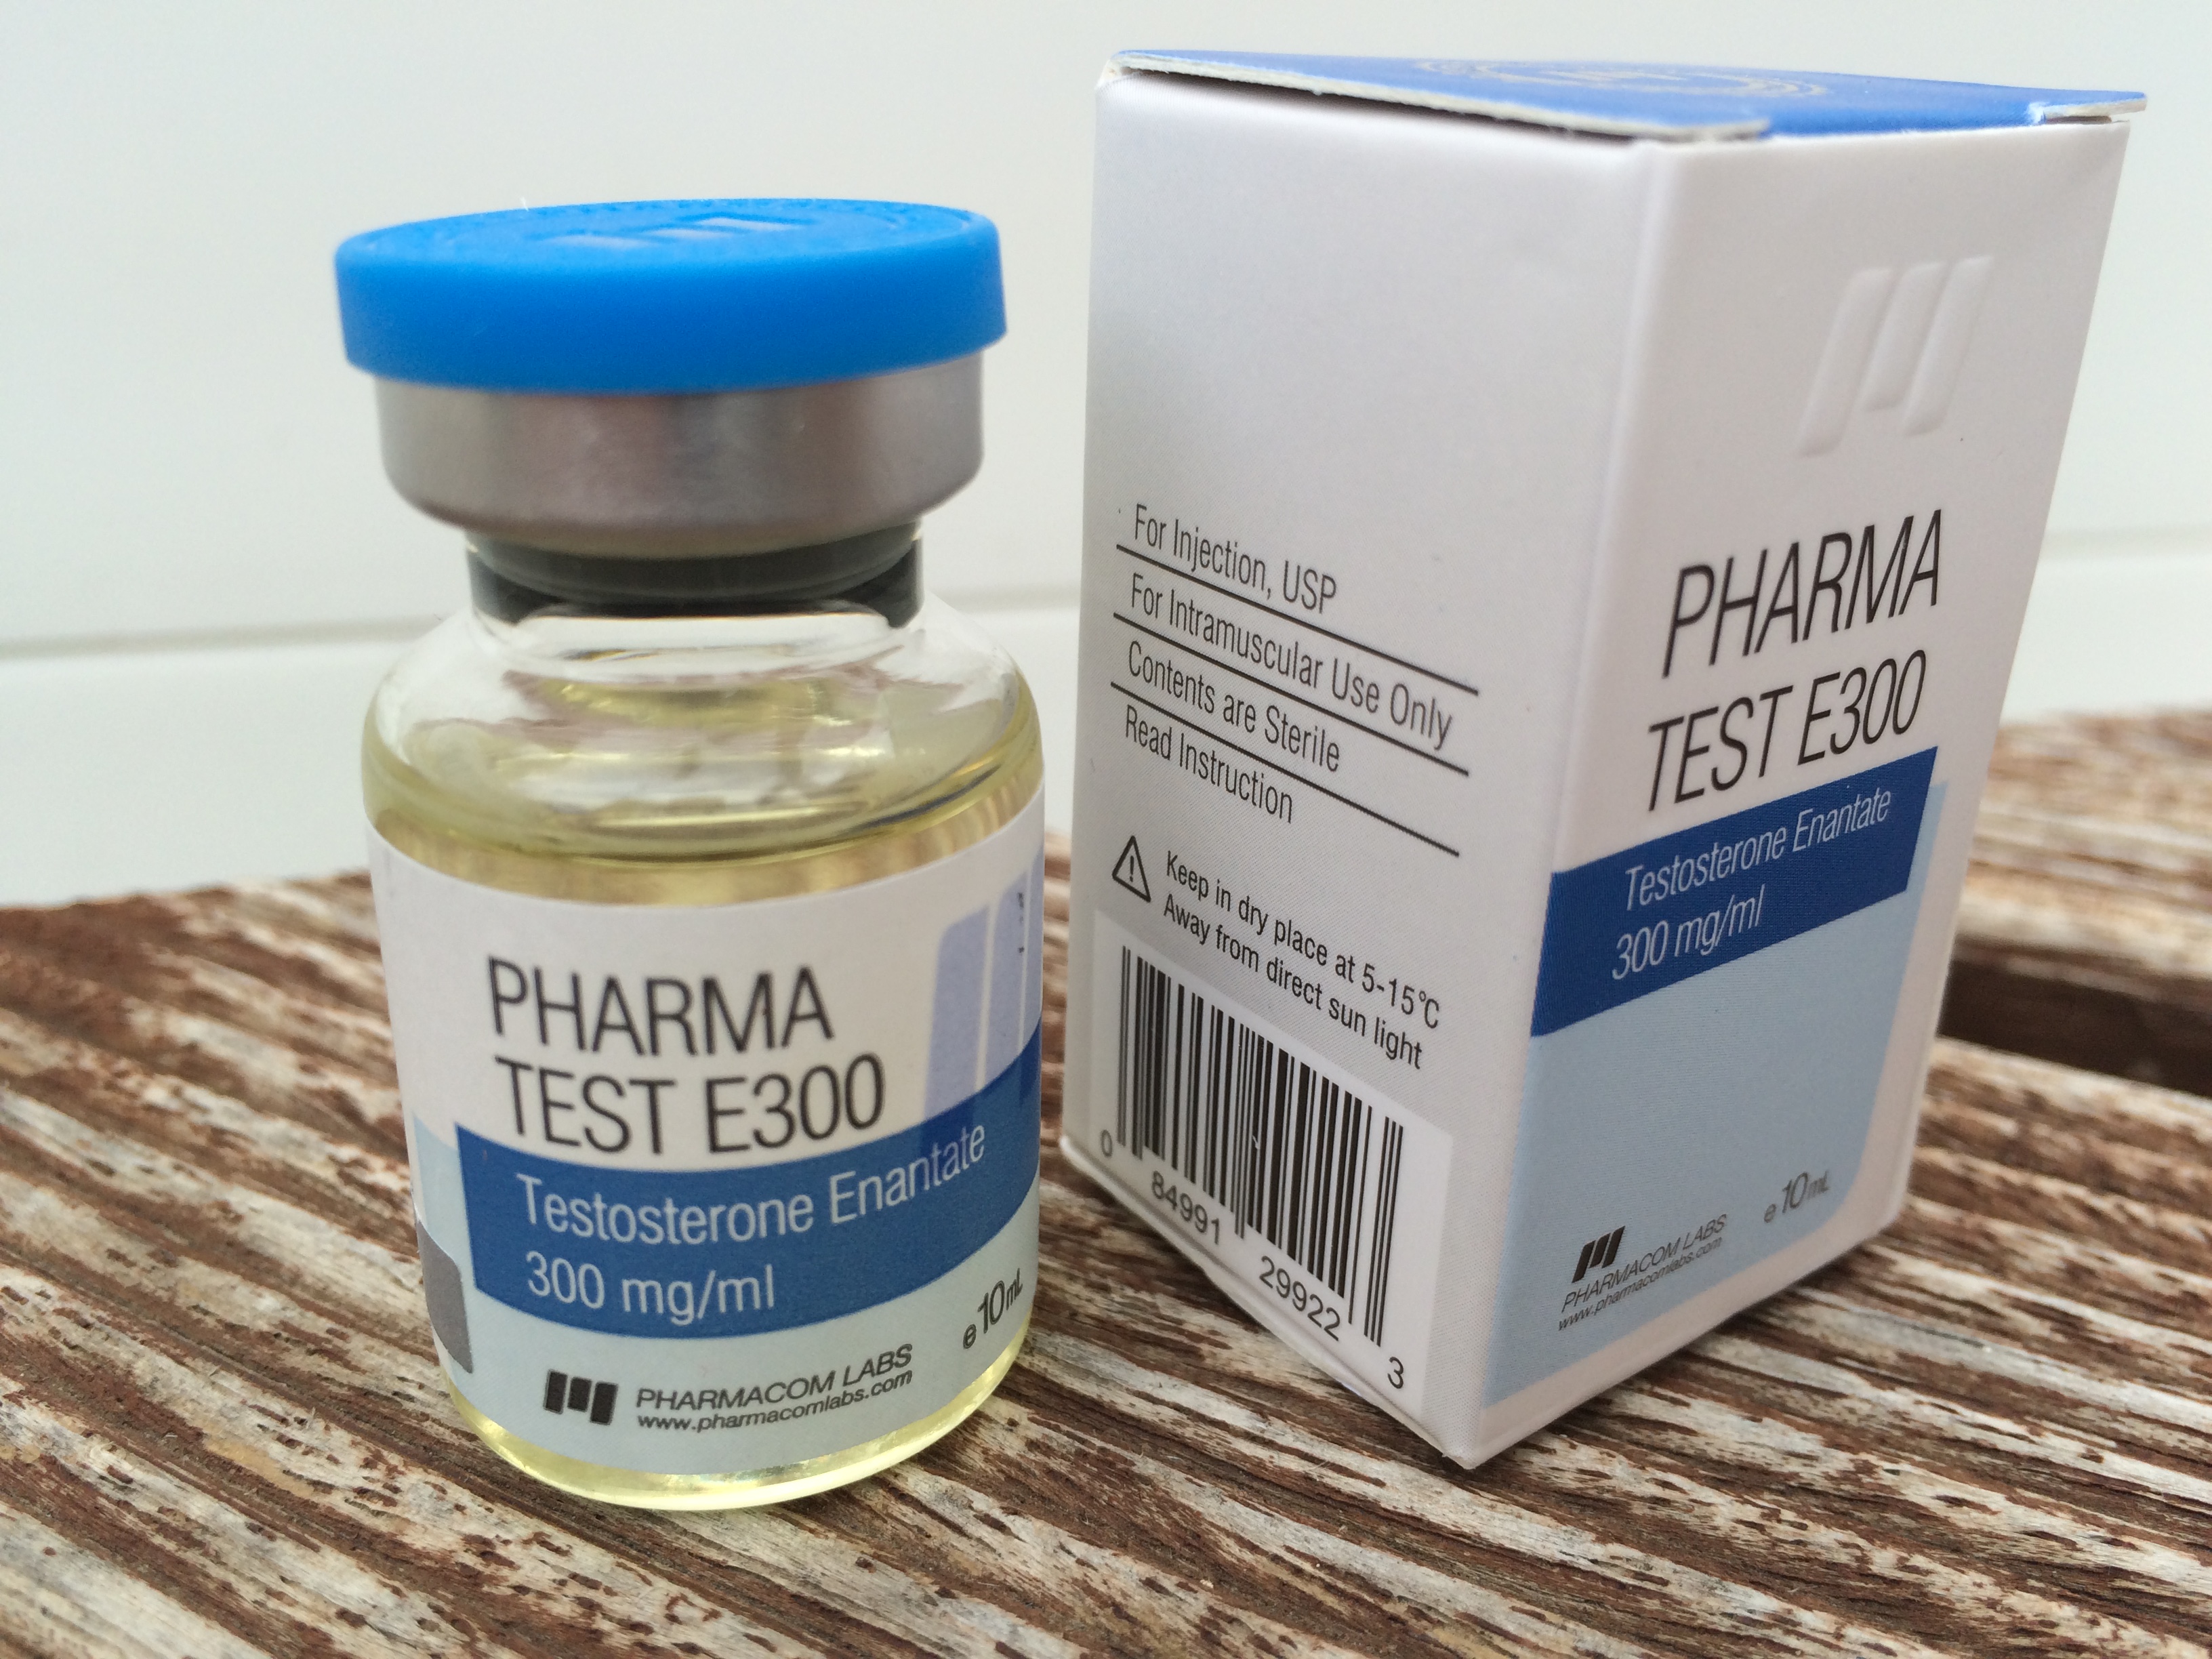 Pharmacom Labs PHARMA Test E300 Lab Test Results Anabolic Lab